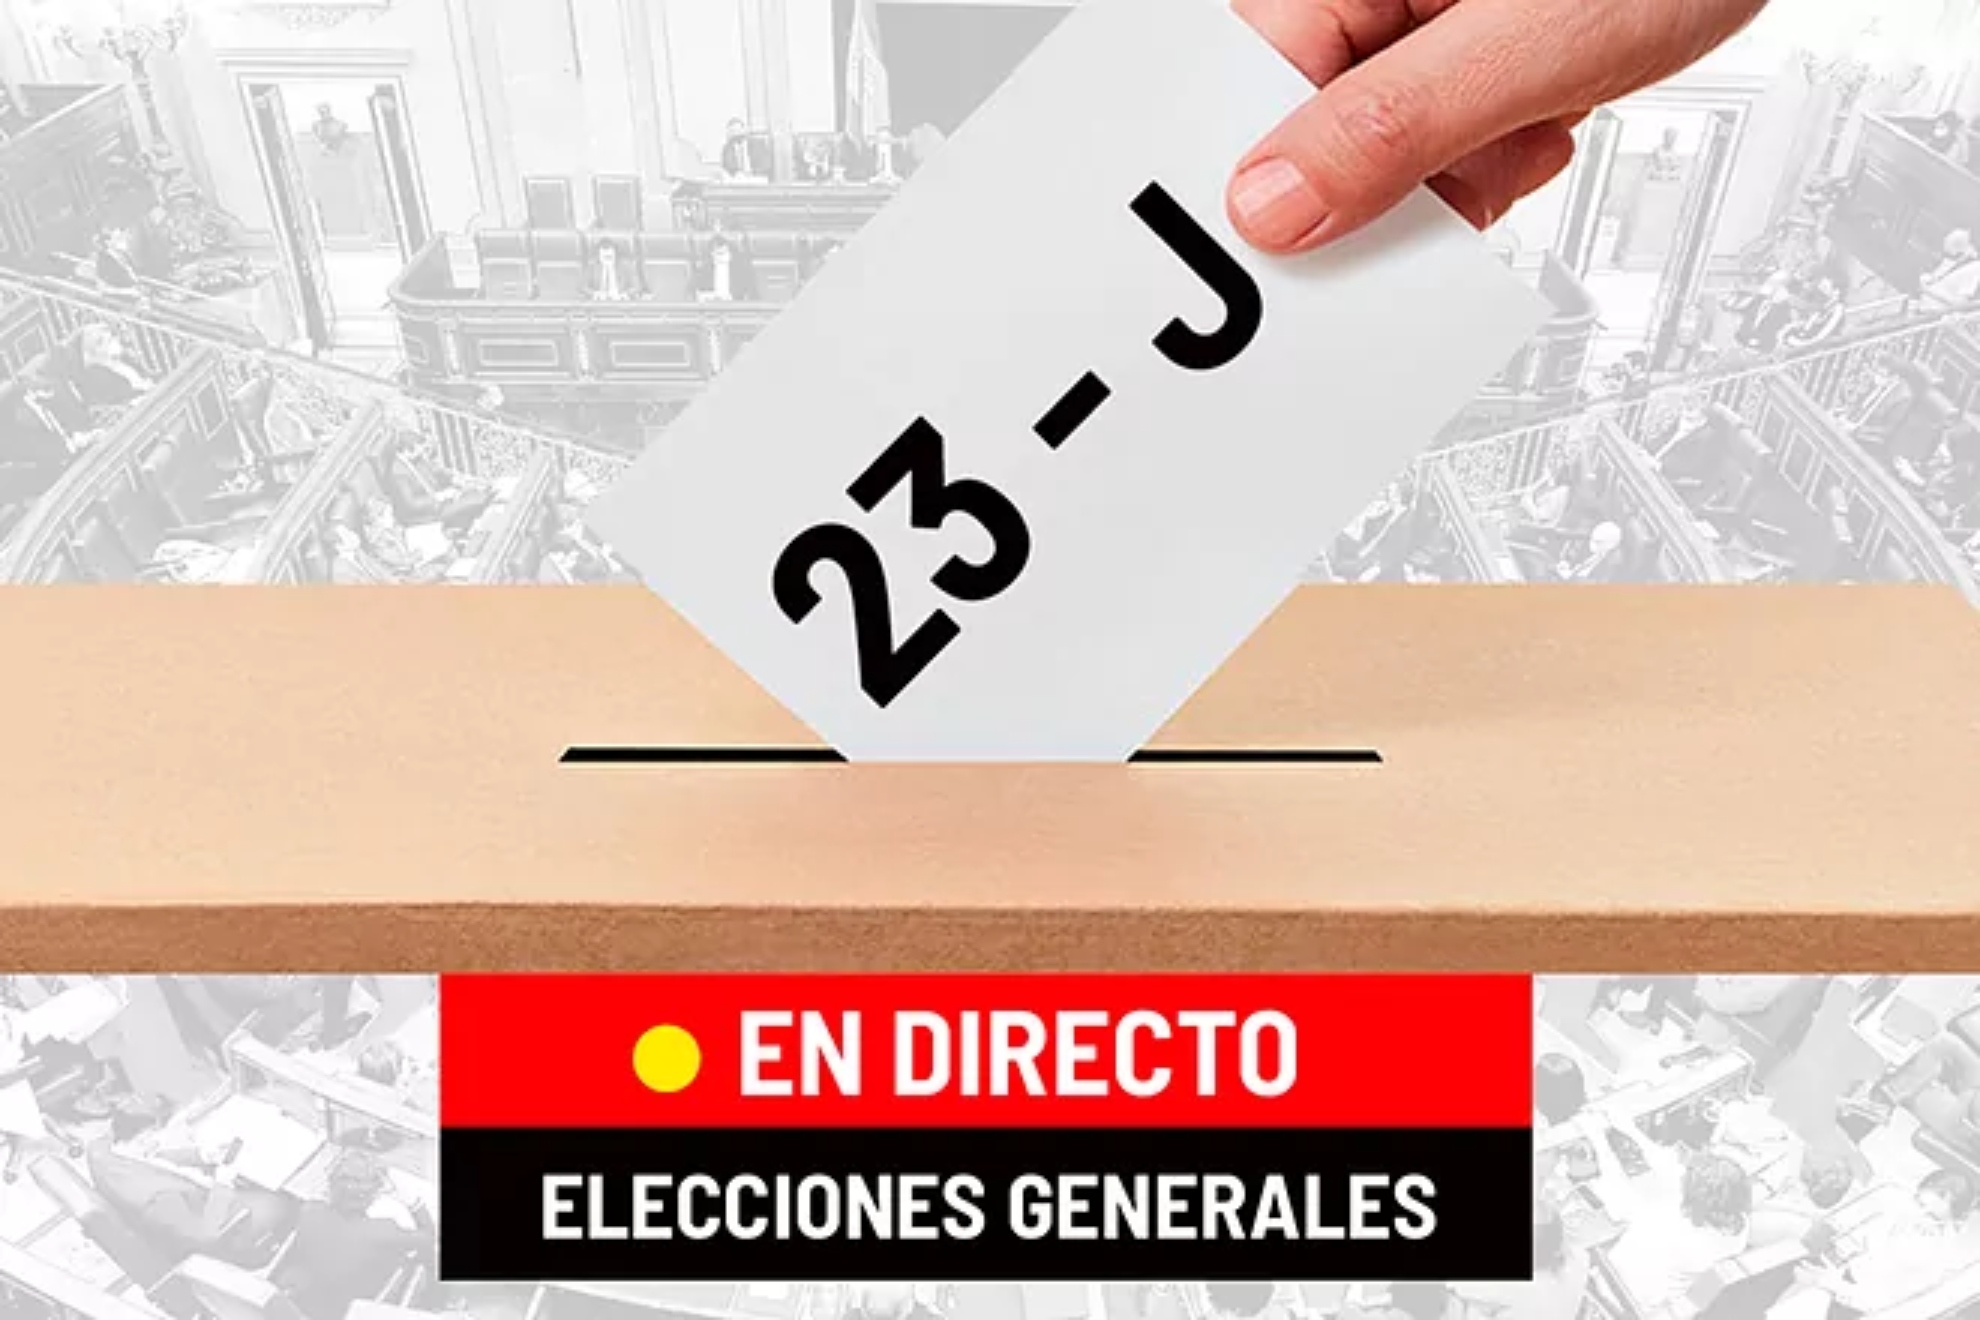 Elecciones generales en directo hoy | Pactos, noticias y última hora de PSOE, PP, VOX y Sumar sobre el 23J